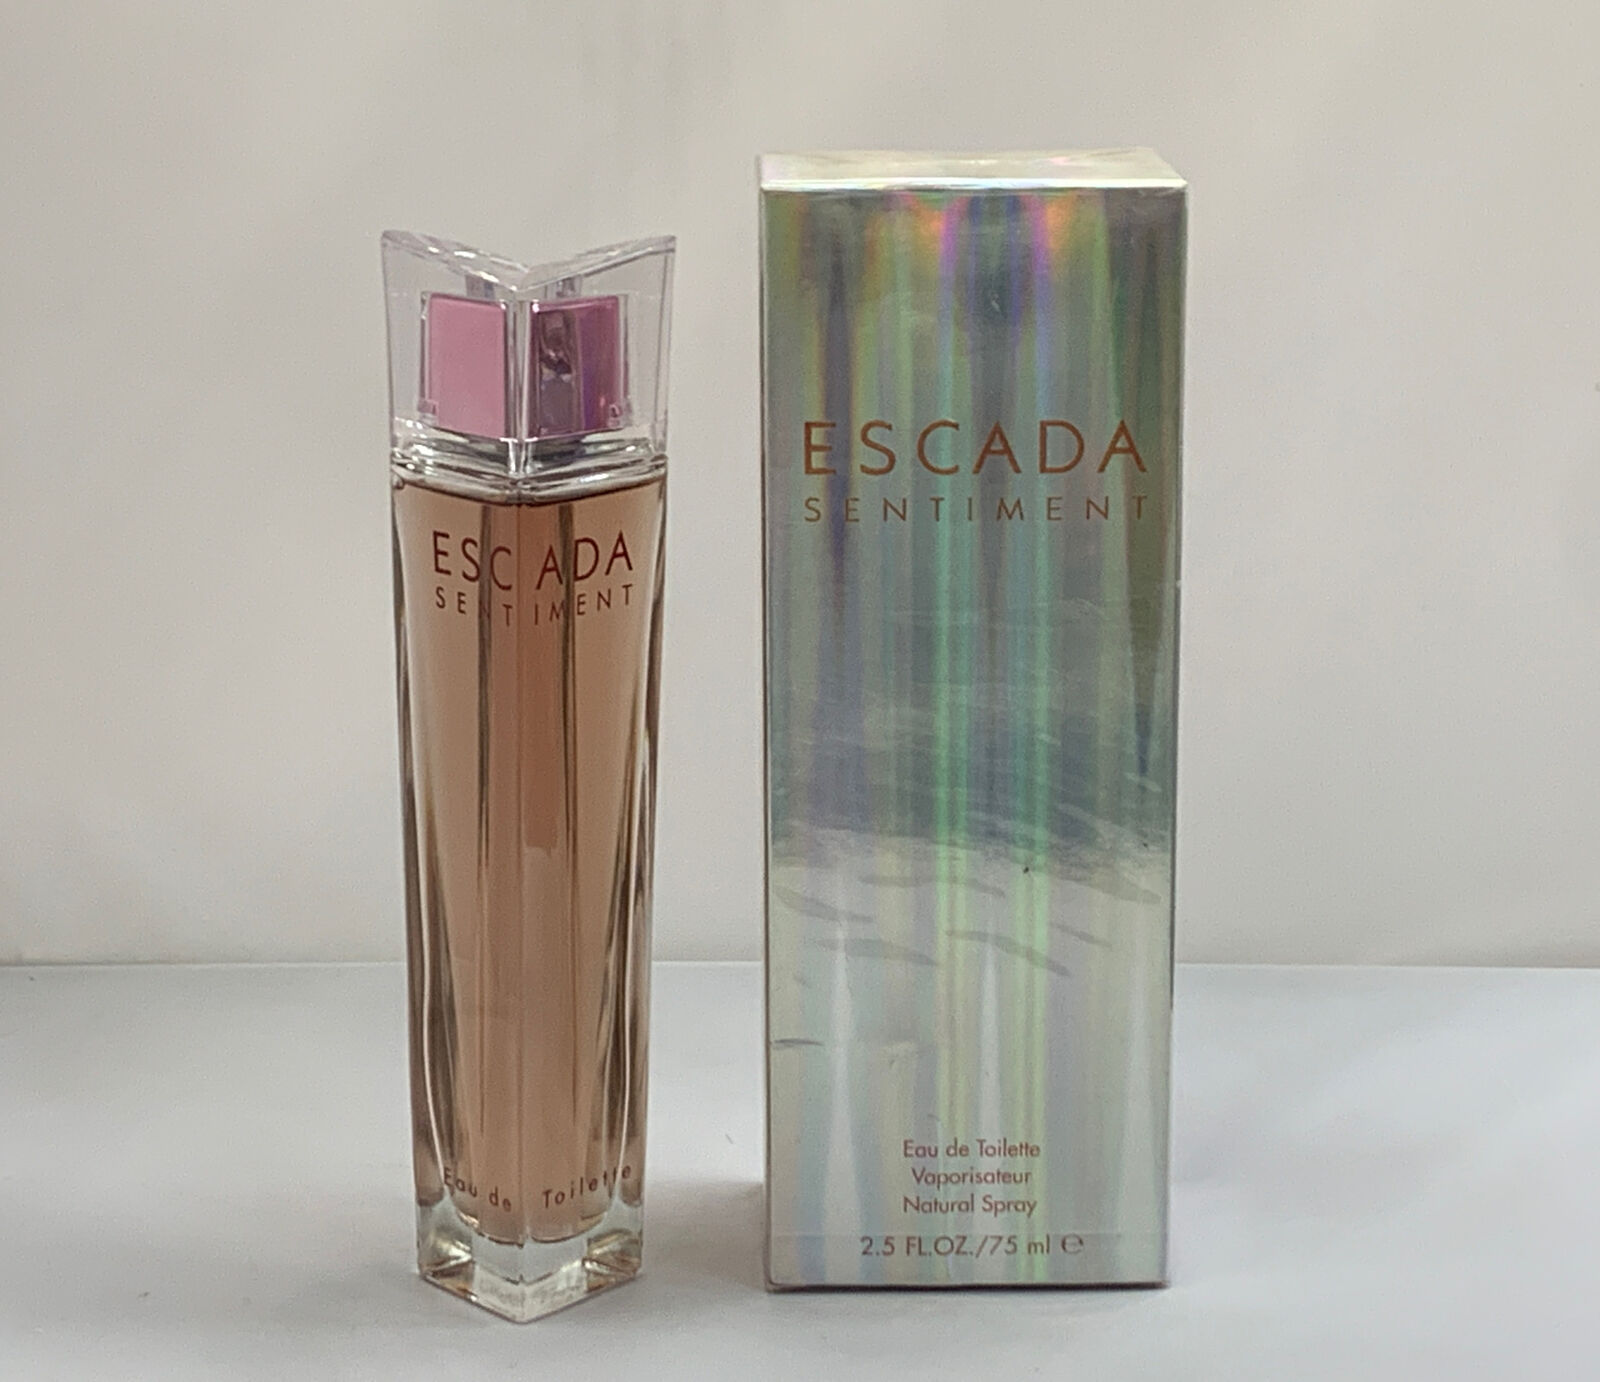 ESCADA SENTIMENT by Escada 2.5 oz 75 ml EDT Spray for Women New in Box